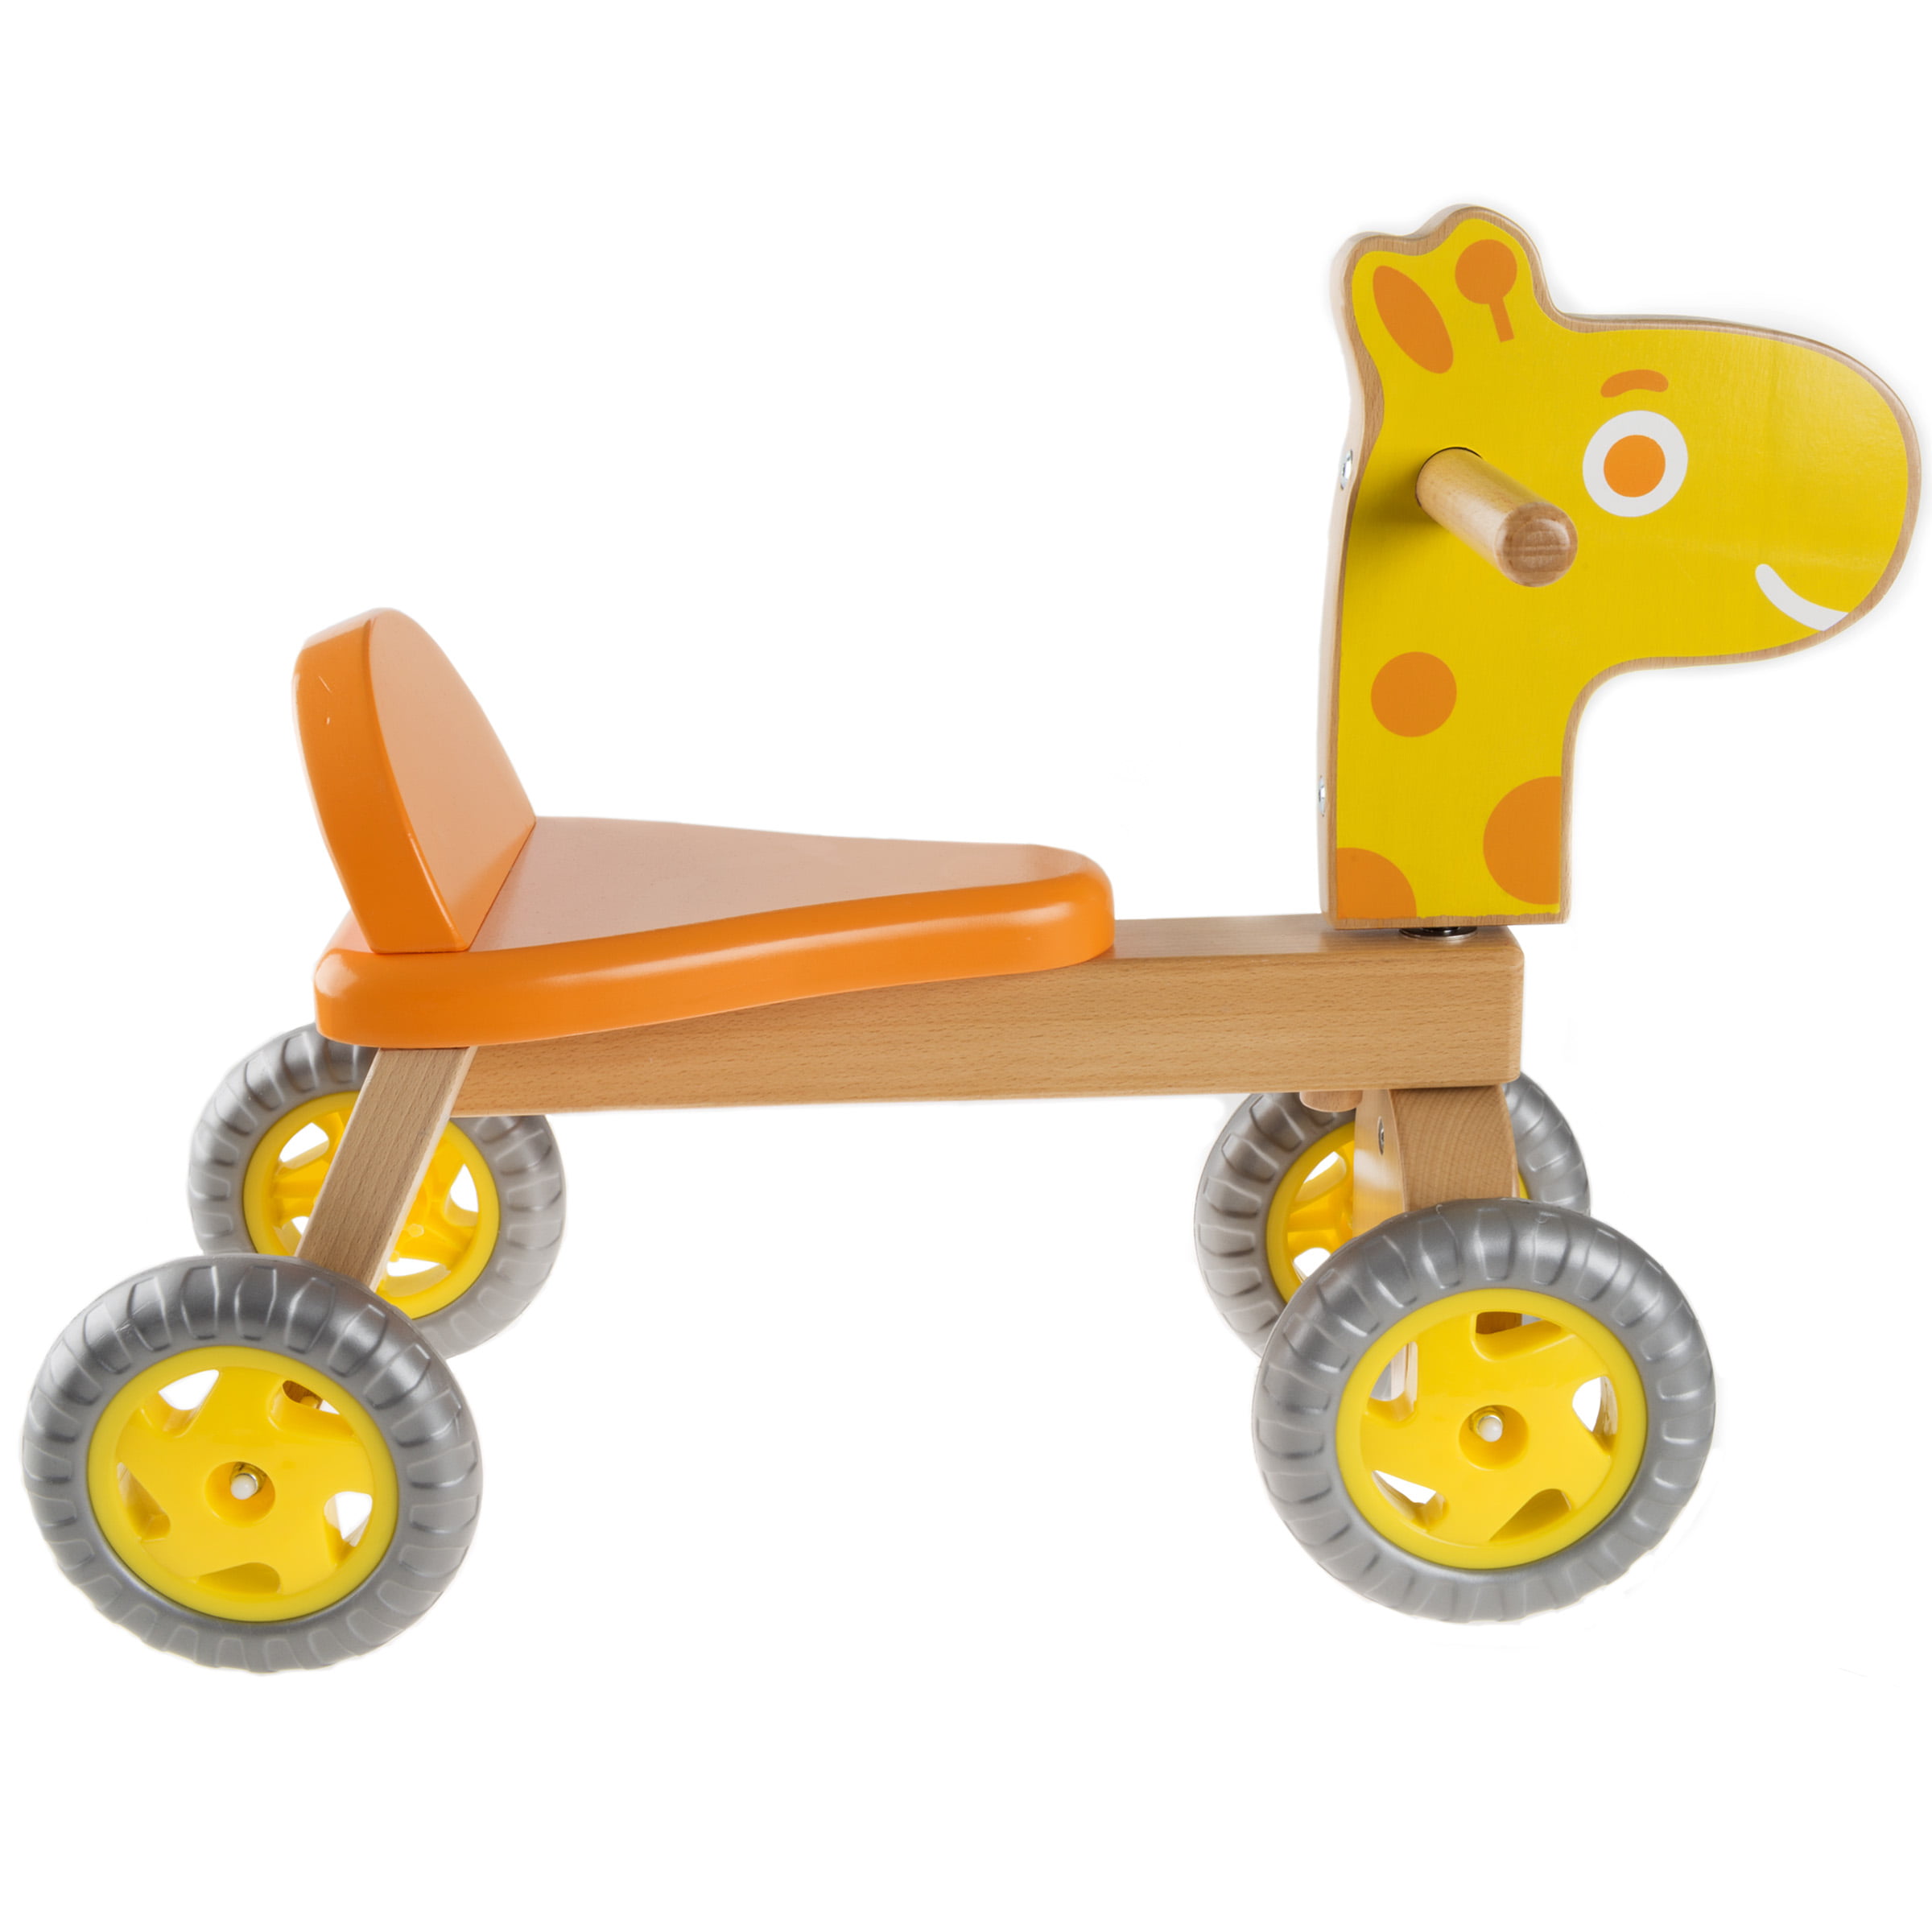 Nicko NIC853 Giraffe Children's Kid's Yellow Wooden Balance Bike 2-5 Years 